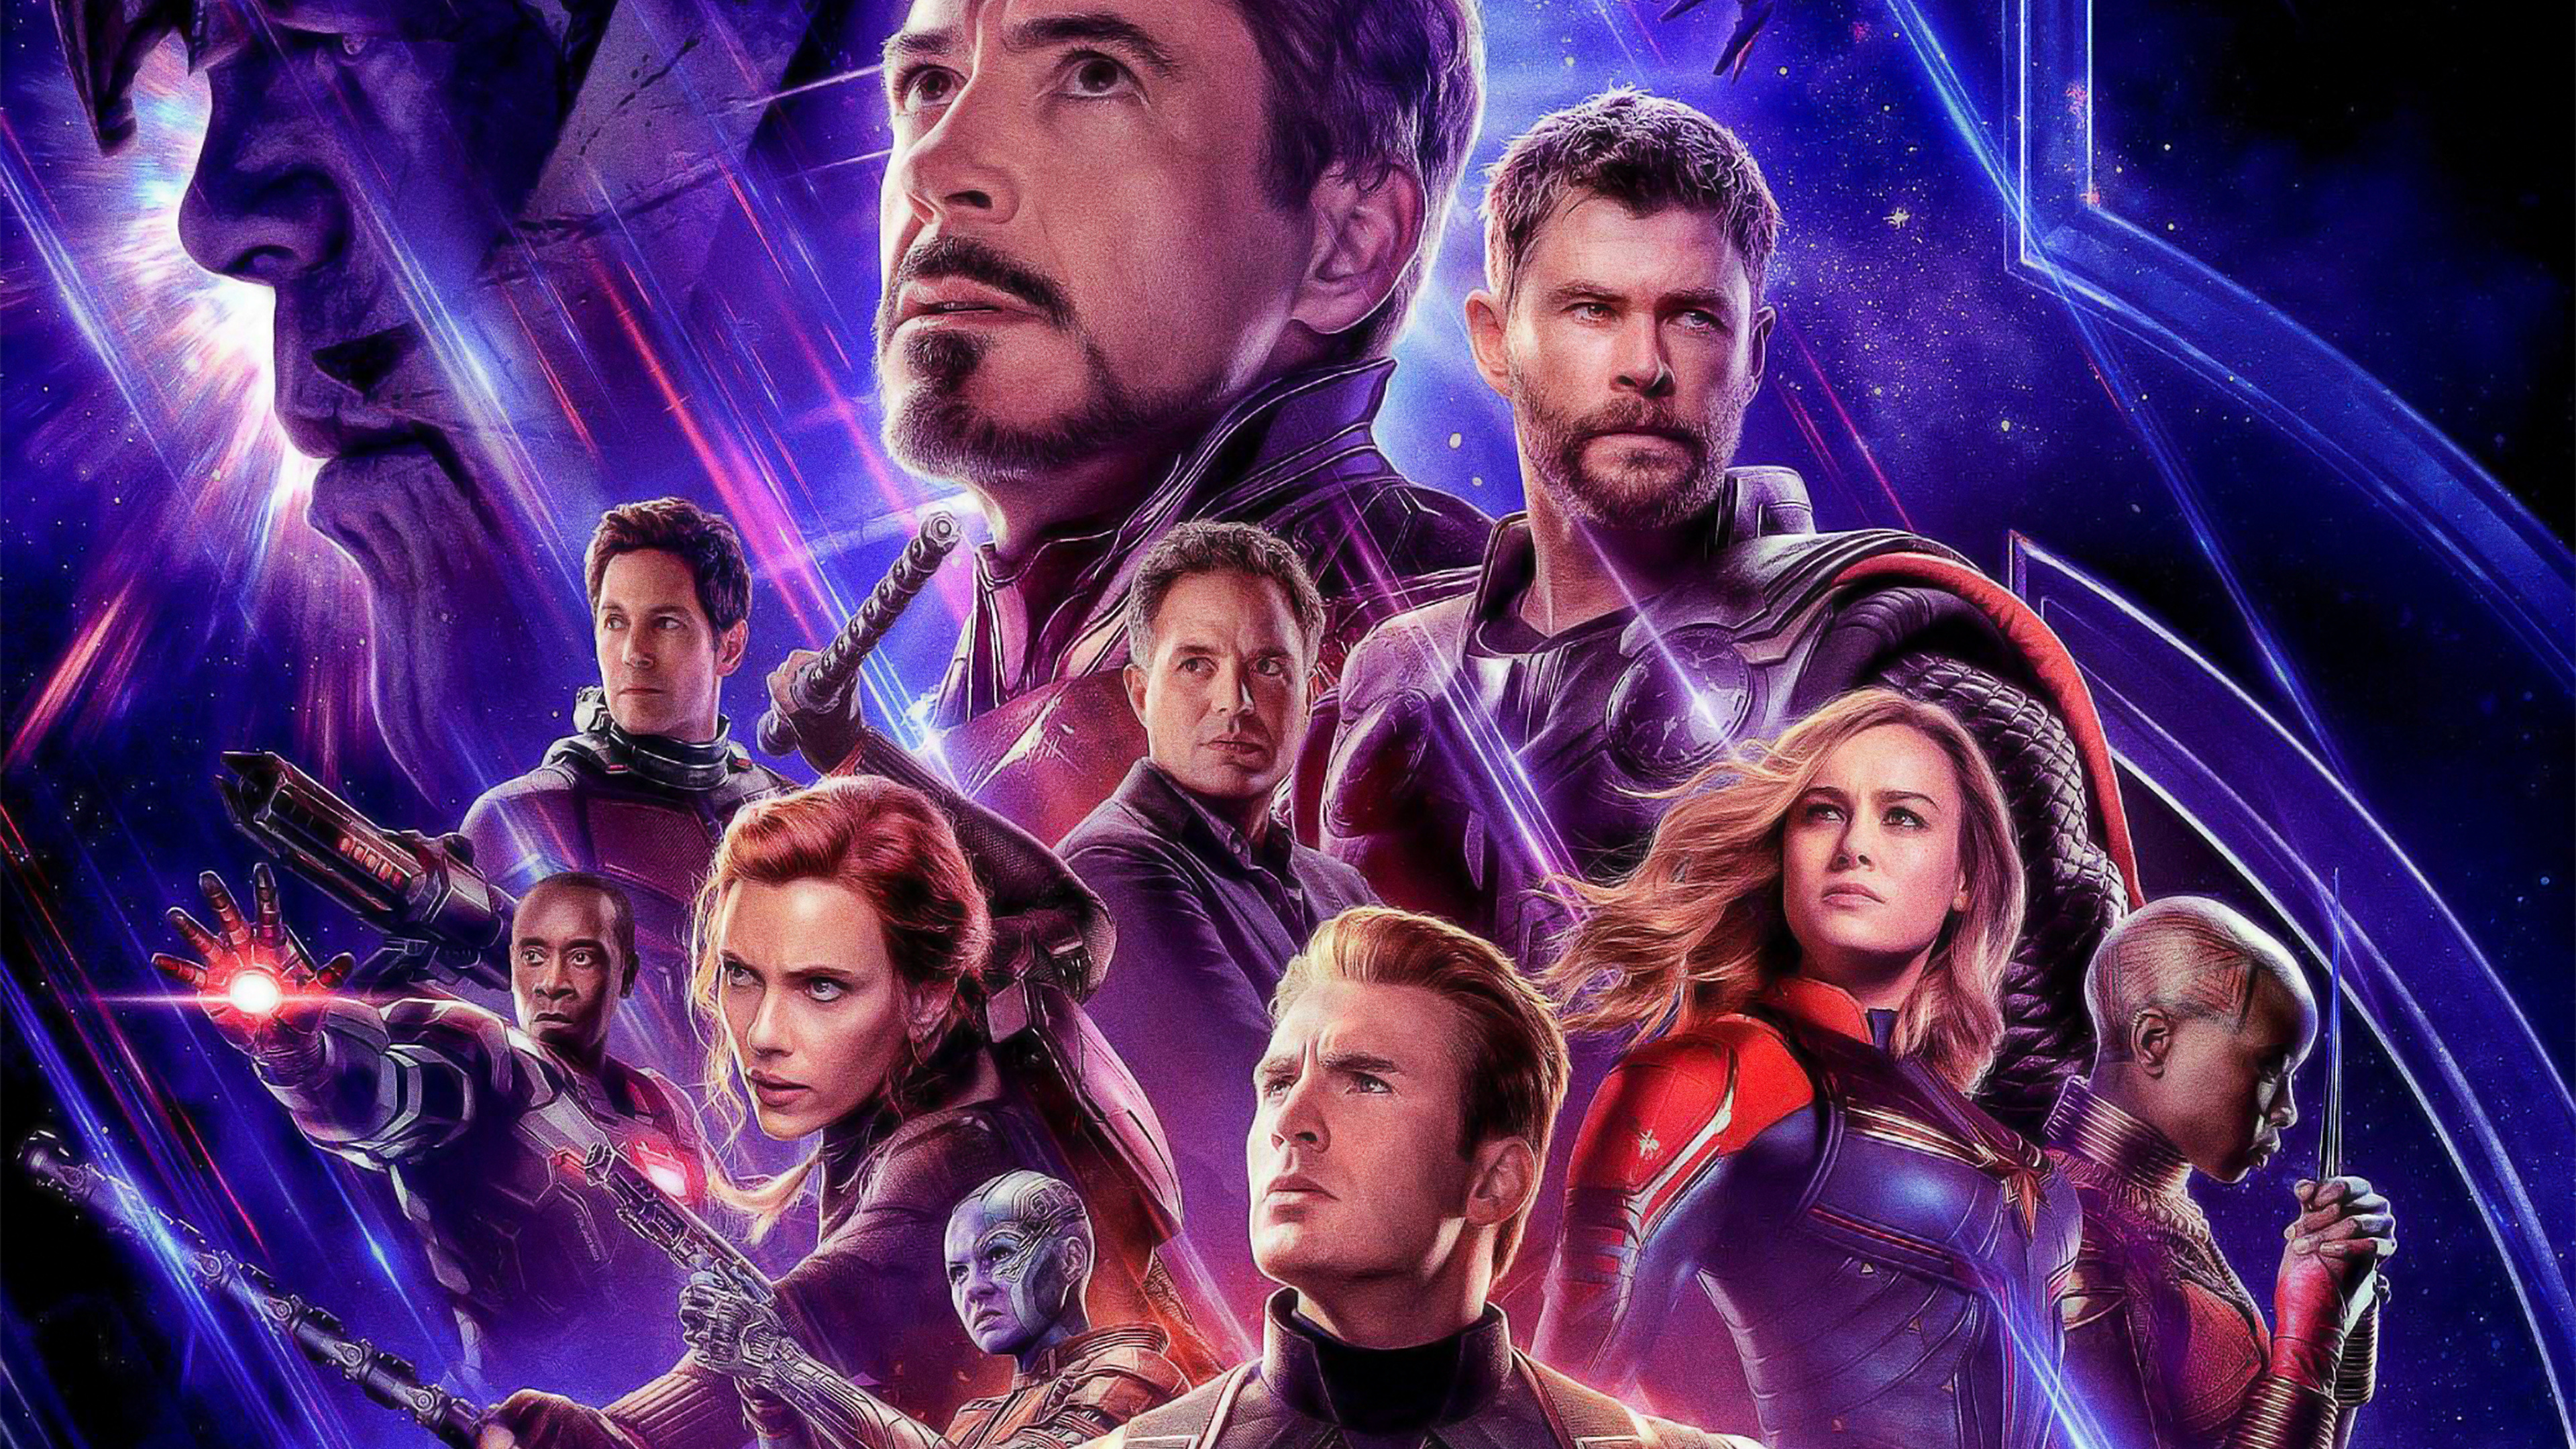 Avengers Endgame Wallpaper For Mobile